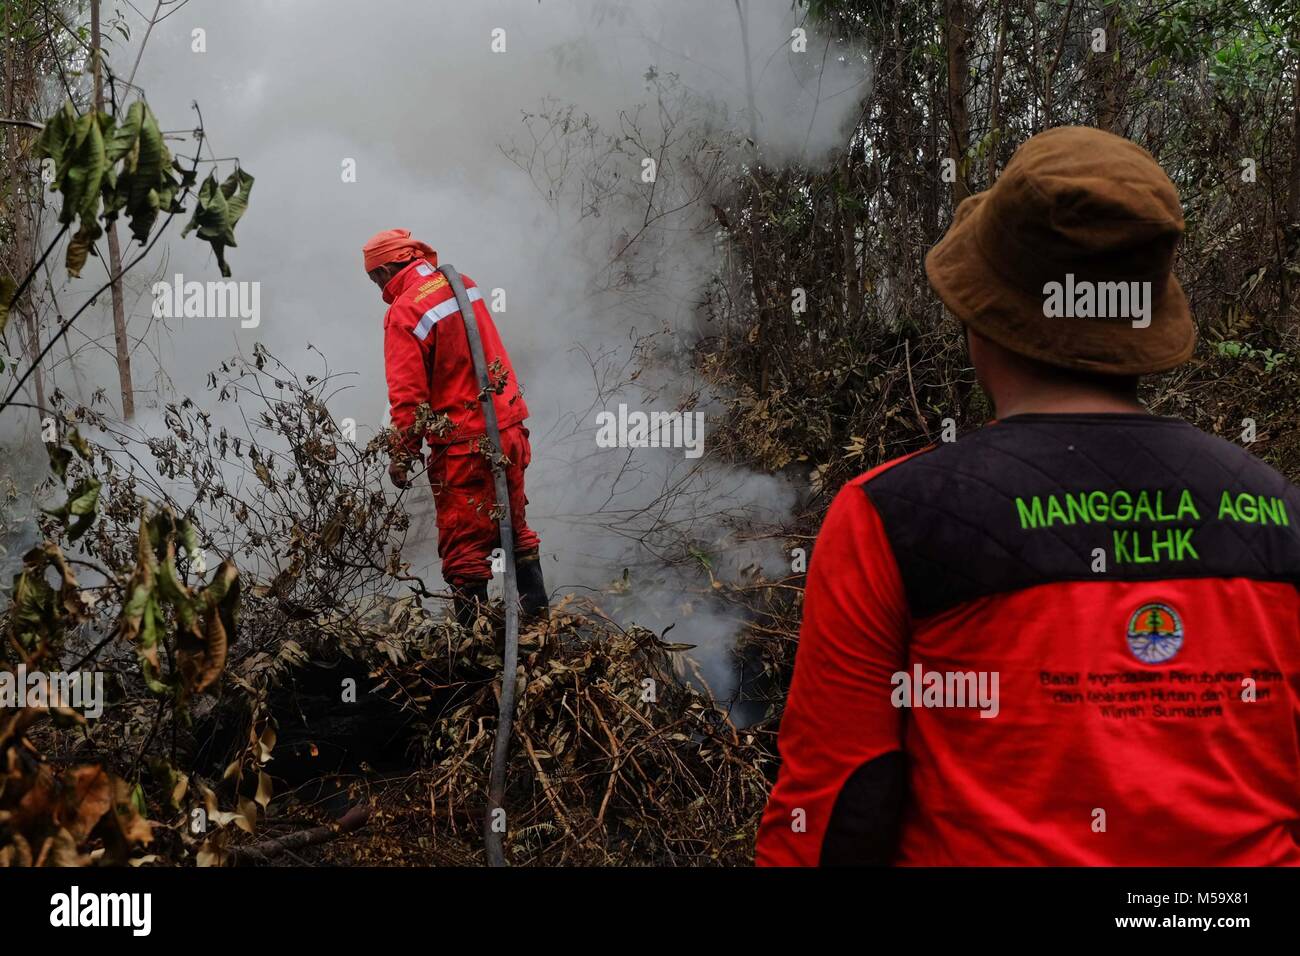 Riau, l'Indonésie. Feb 21, 2018. Les pompiers pour éteindre les feux de tourbières à Pekanbaru, Riau, l'Indonésie, le 21 février 2018. Plusieurs provinces de l'Indonésie ont mis en état d'alerte d'urgence pour les feux de forêts et des terres. Credit : Dedi Sutisna/Xinhua/Alamy Live News Banque D'Images